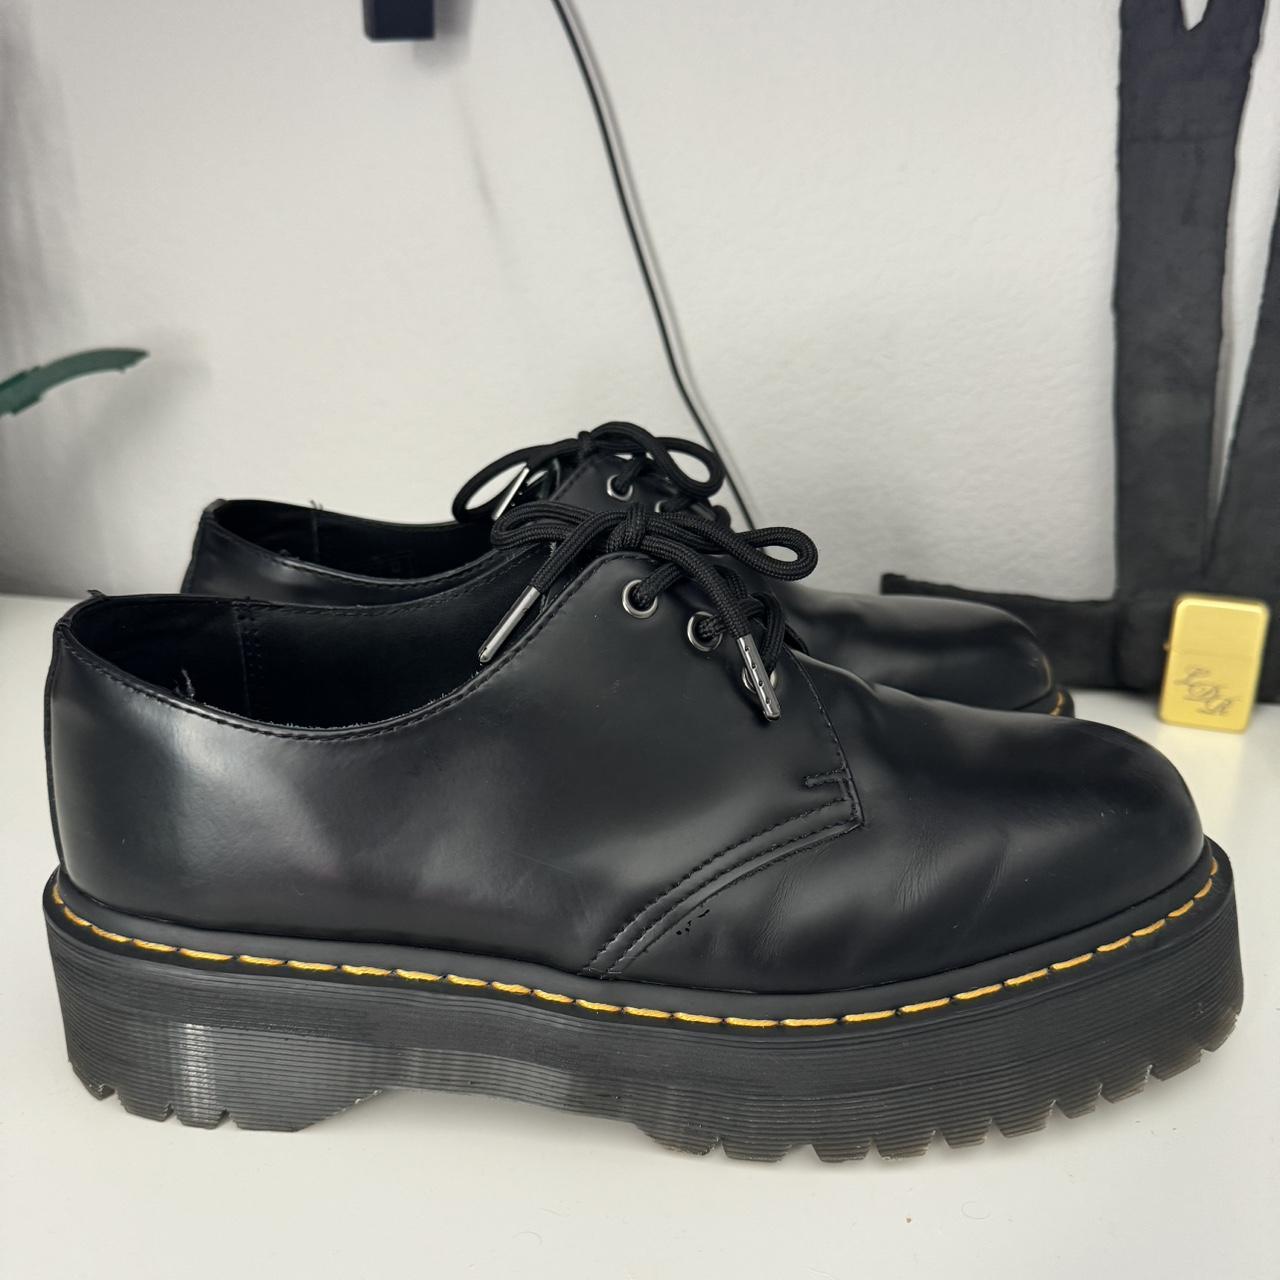 Dr Martens 1461 Smooth Leather Platform Shoes Near... - Depop